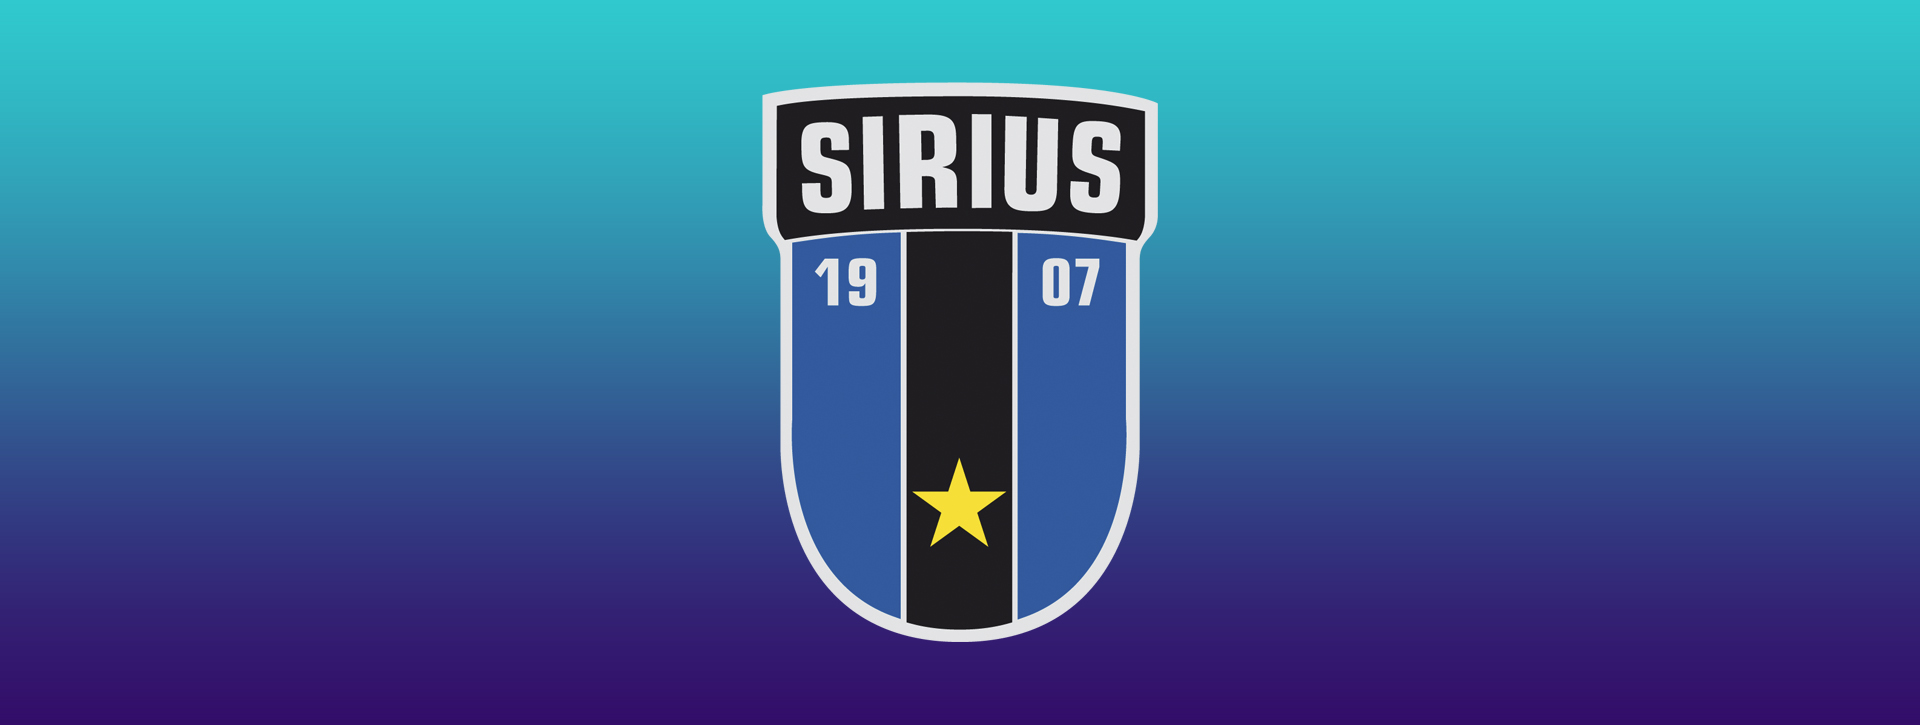 IK Sirius Fotboll